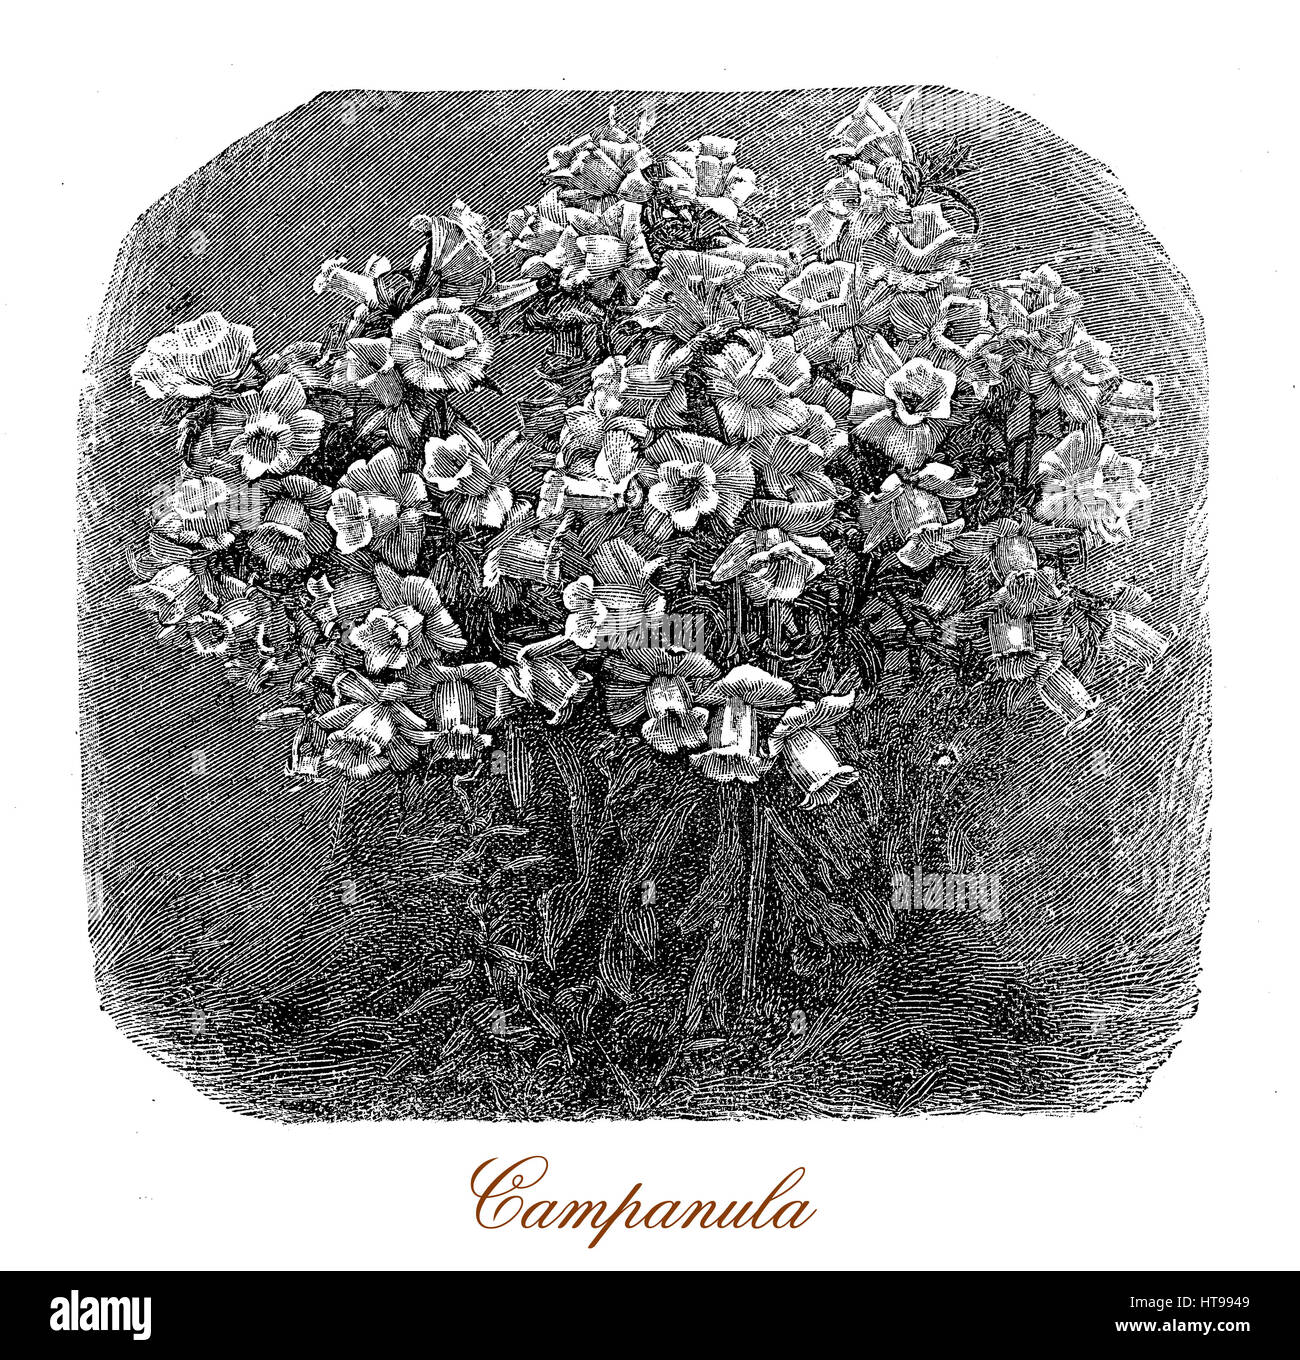 Vintage Gravur eines Bündels von Campanula oder Glockenblume Pflanzen im Garten, sehr dekorativ für die glockenförmigen Blüten, meist blau oder lila Stockfoto